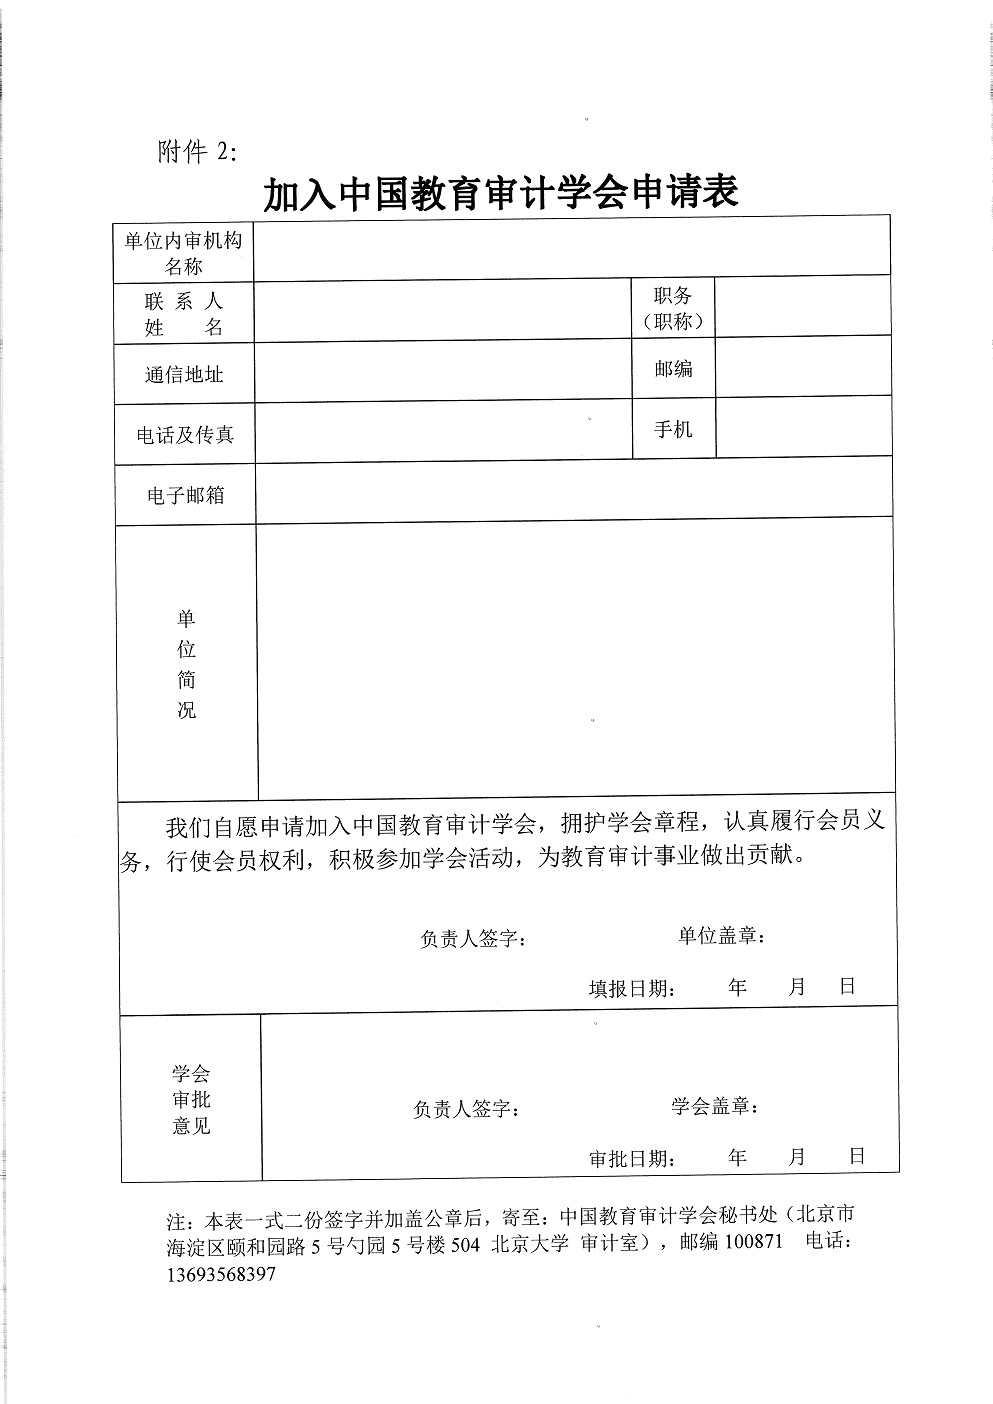 中教审通[2021]9号—中国教育审计学会关于发展新会员的通知_页面_5.jpg